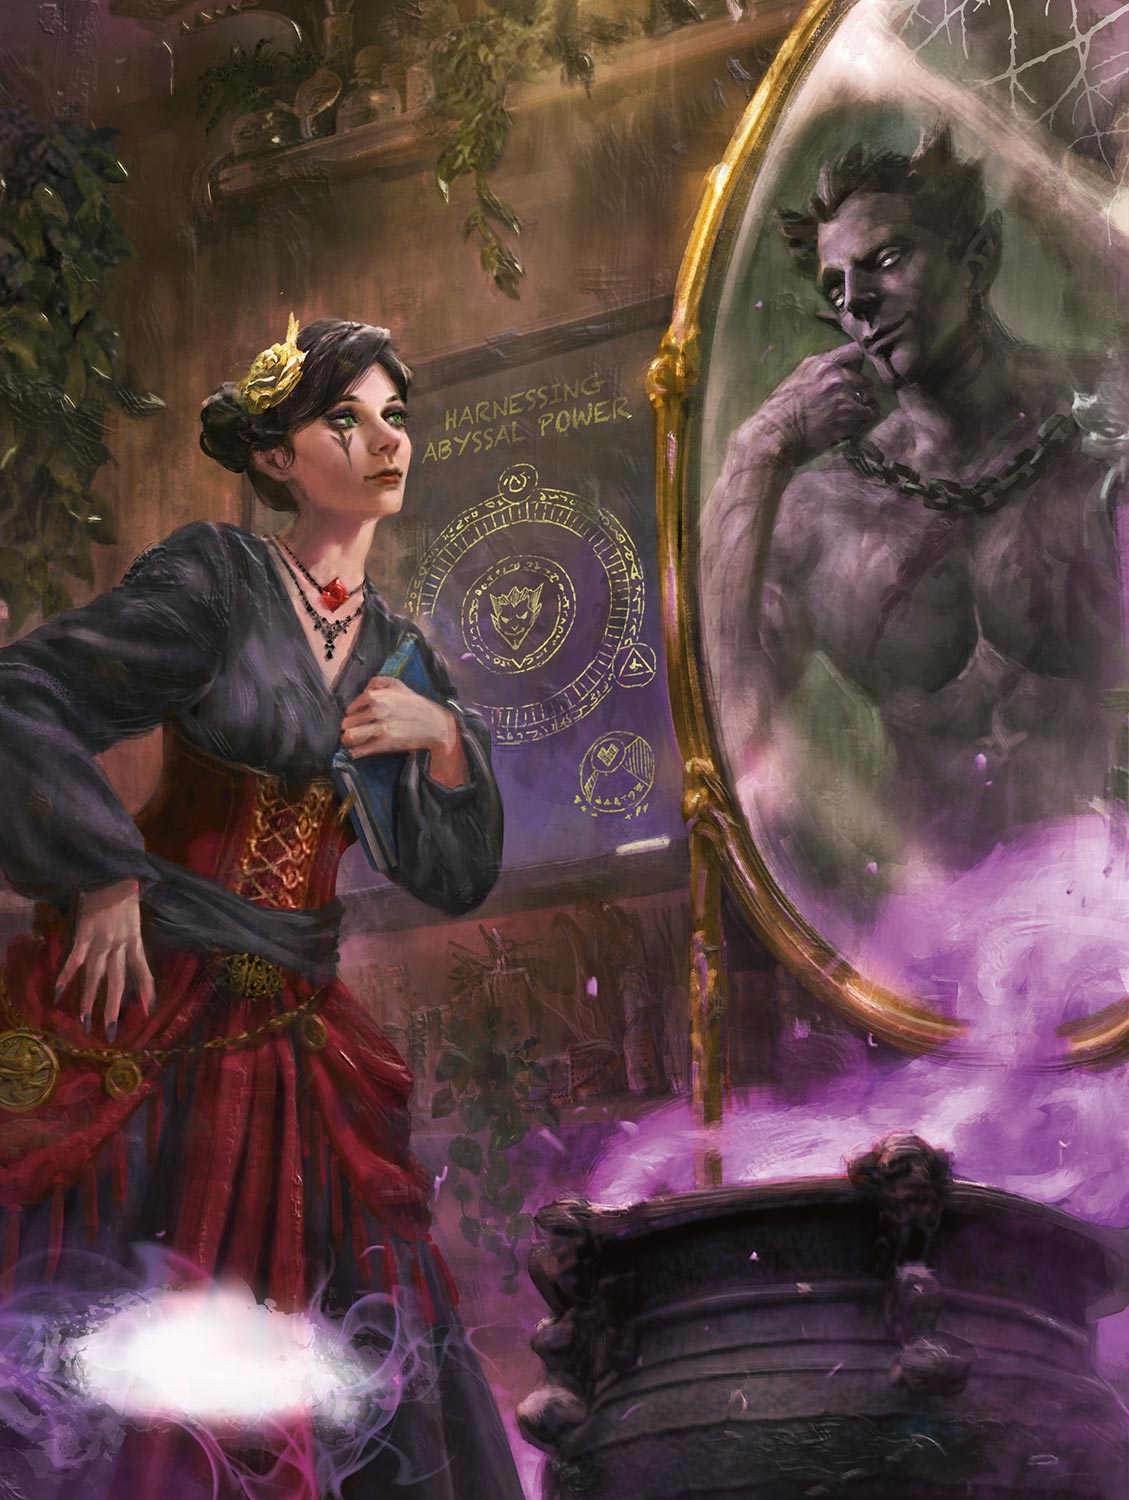 Таша обращается к лорду демонов Граз’зту через волшебное зеркало в своей лаборатории